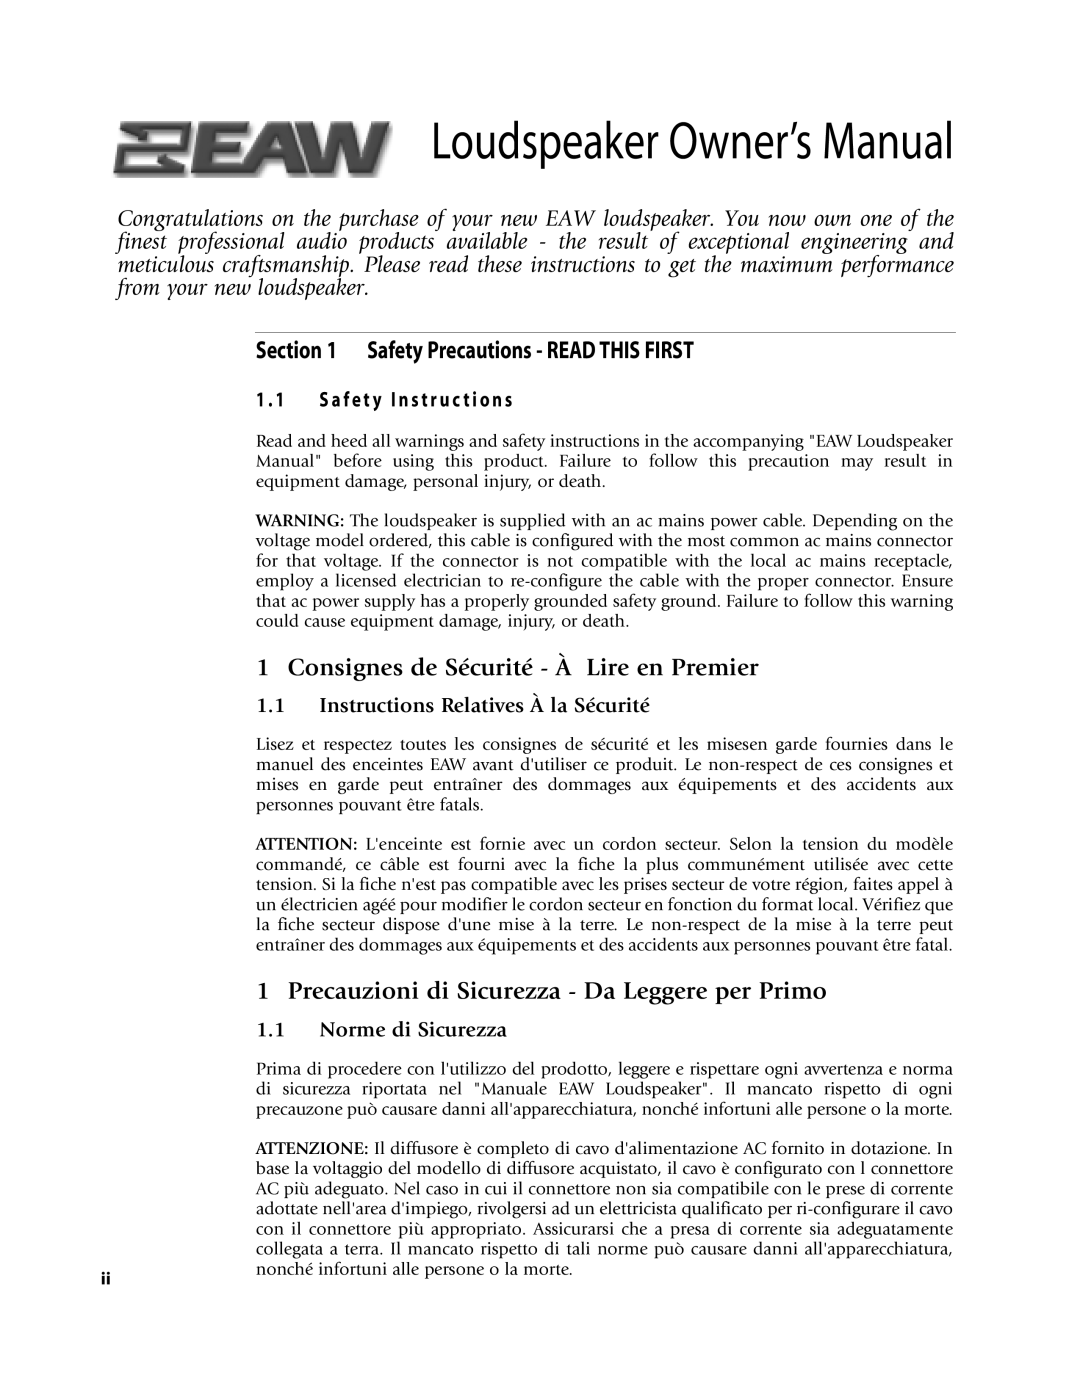 EAW NT26, NTS22, NT56 Safety Precautions - READ THIS FIRST, Consignes de Sécurité - À Lire en Premier, Norme di Sicurezza 